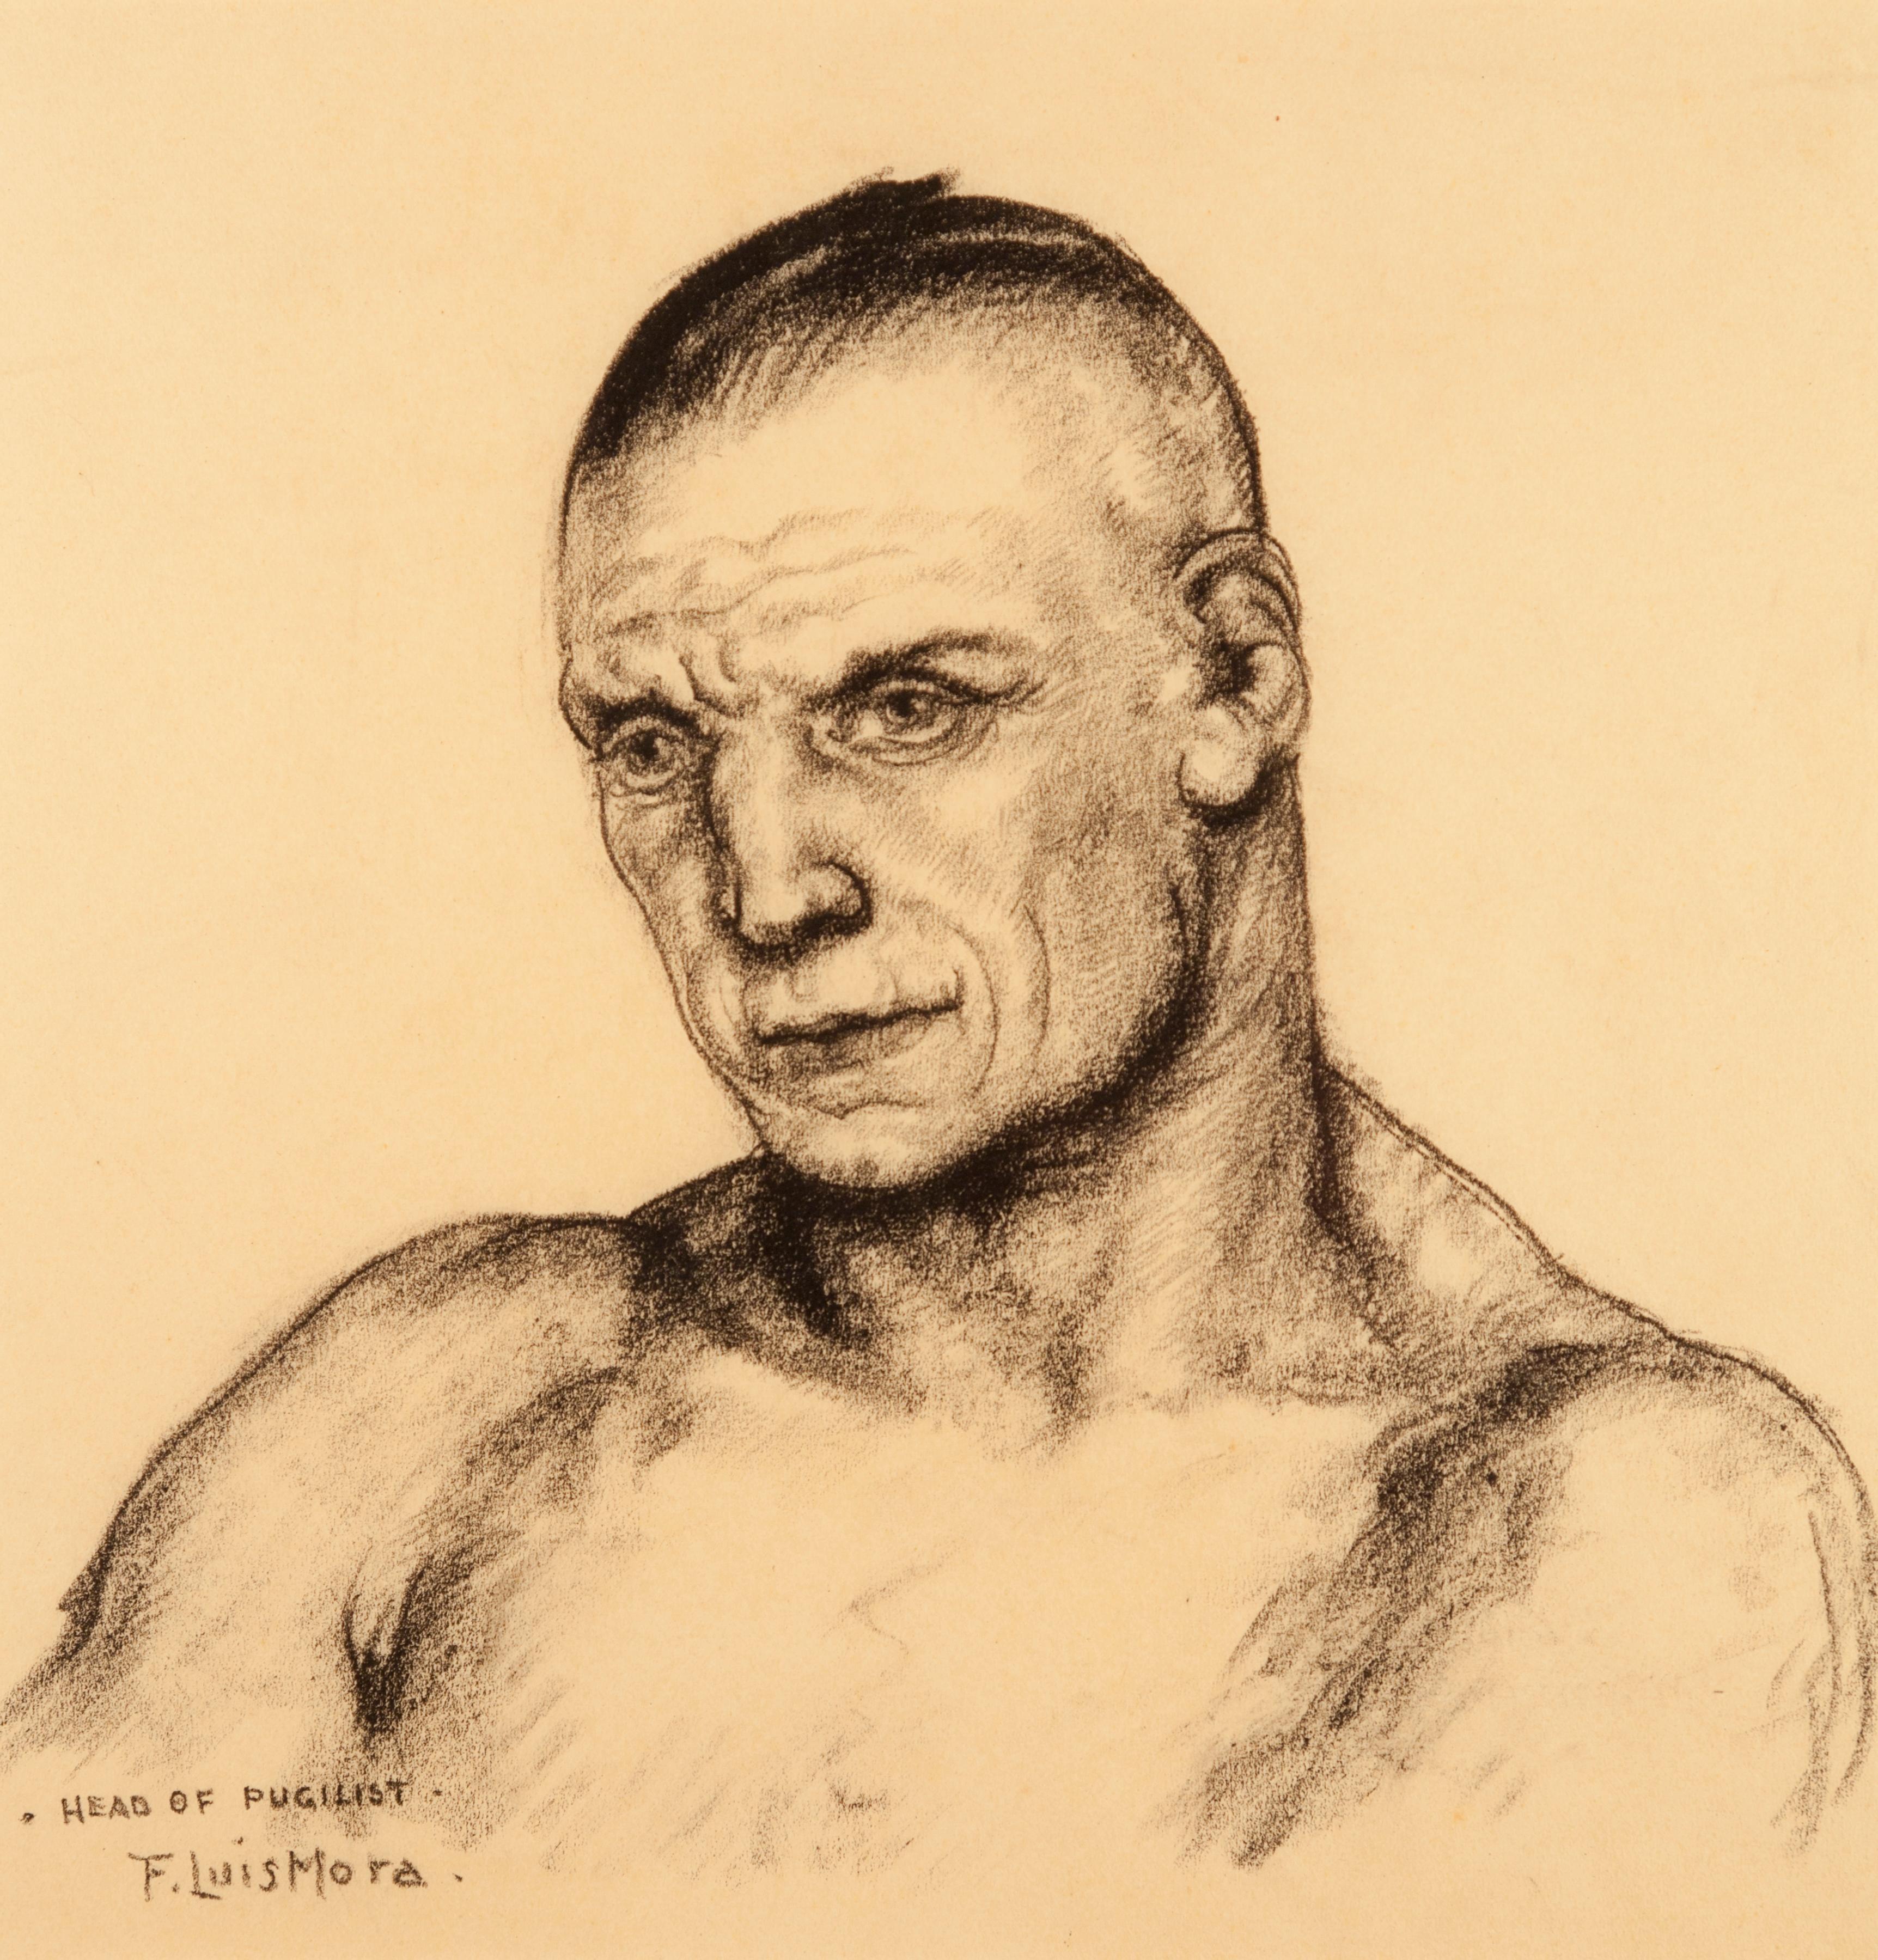 Francis Luis Mora Portrait - Head of a Pugilist